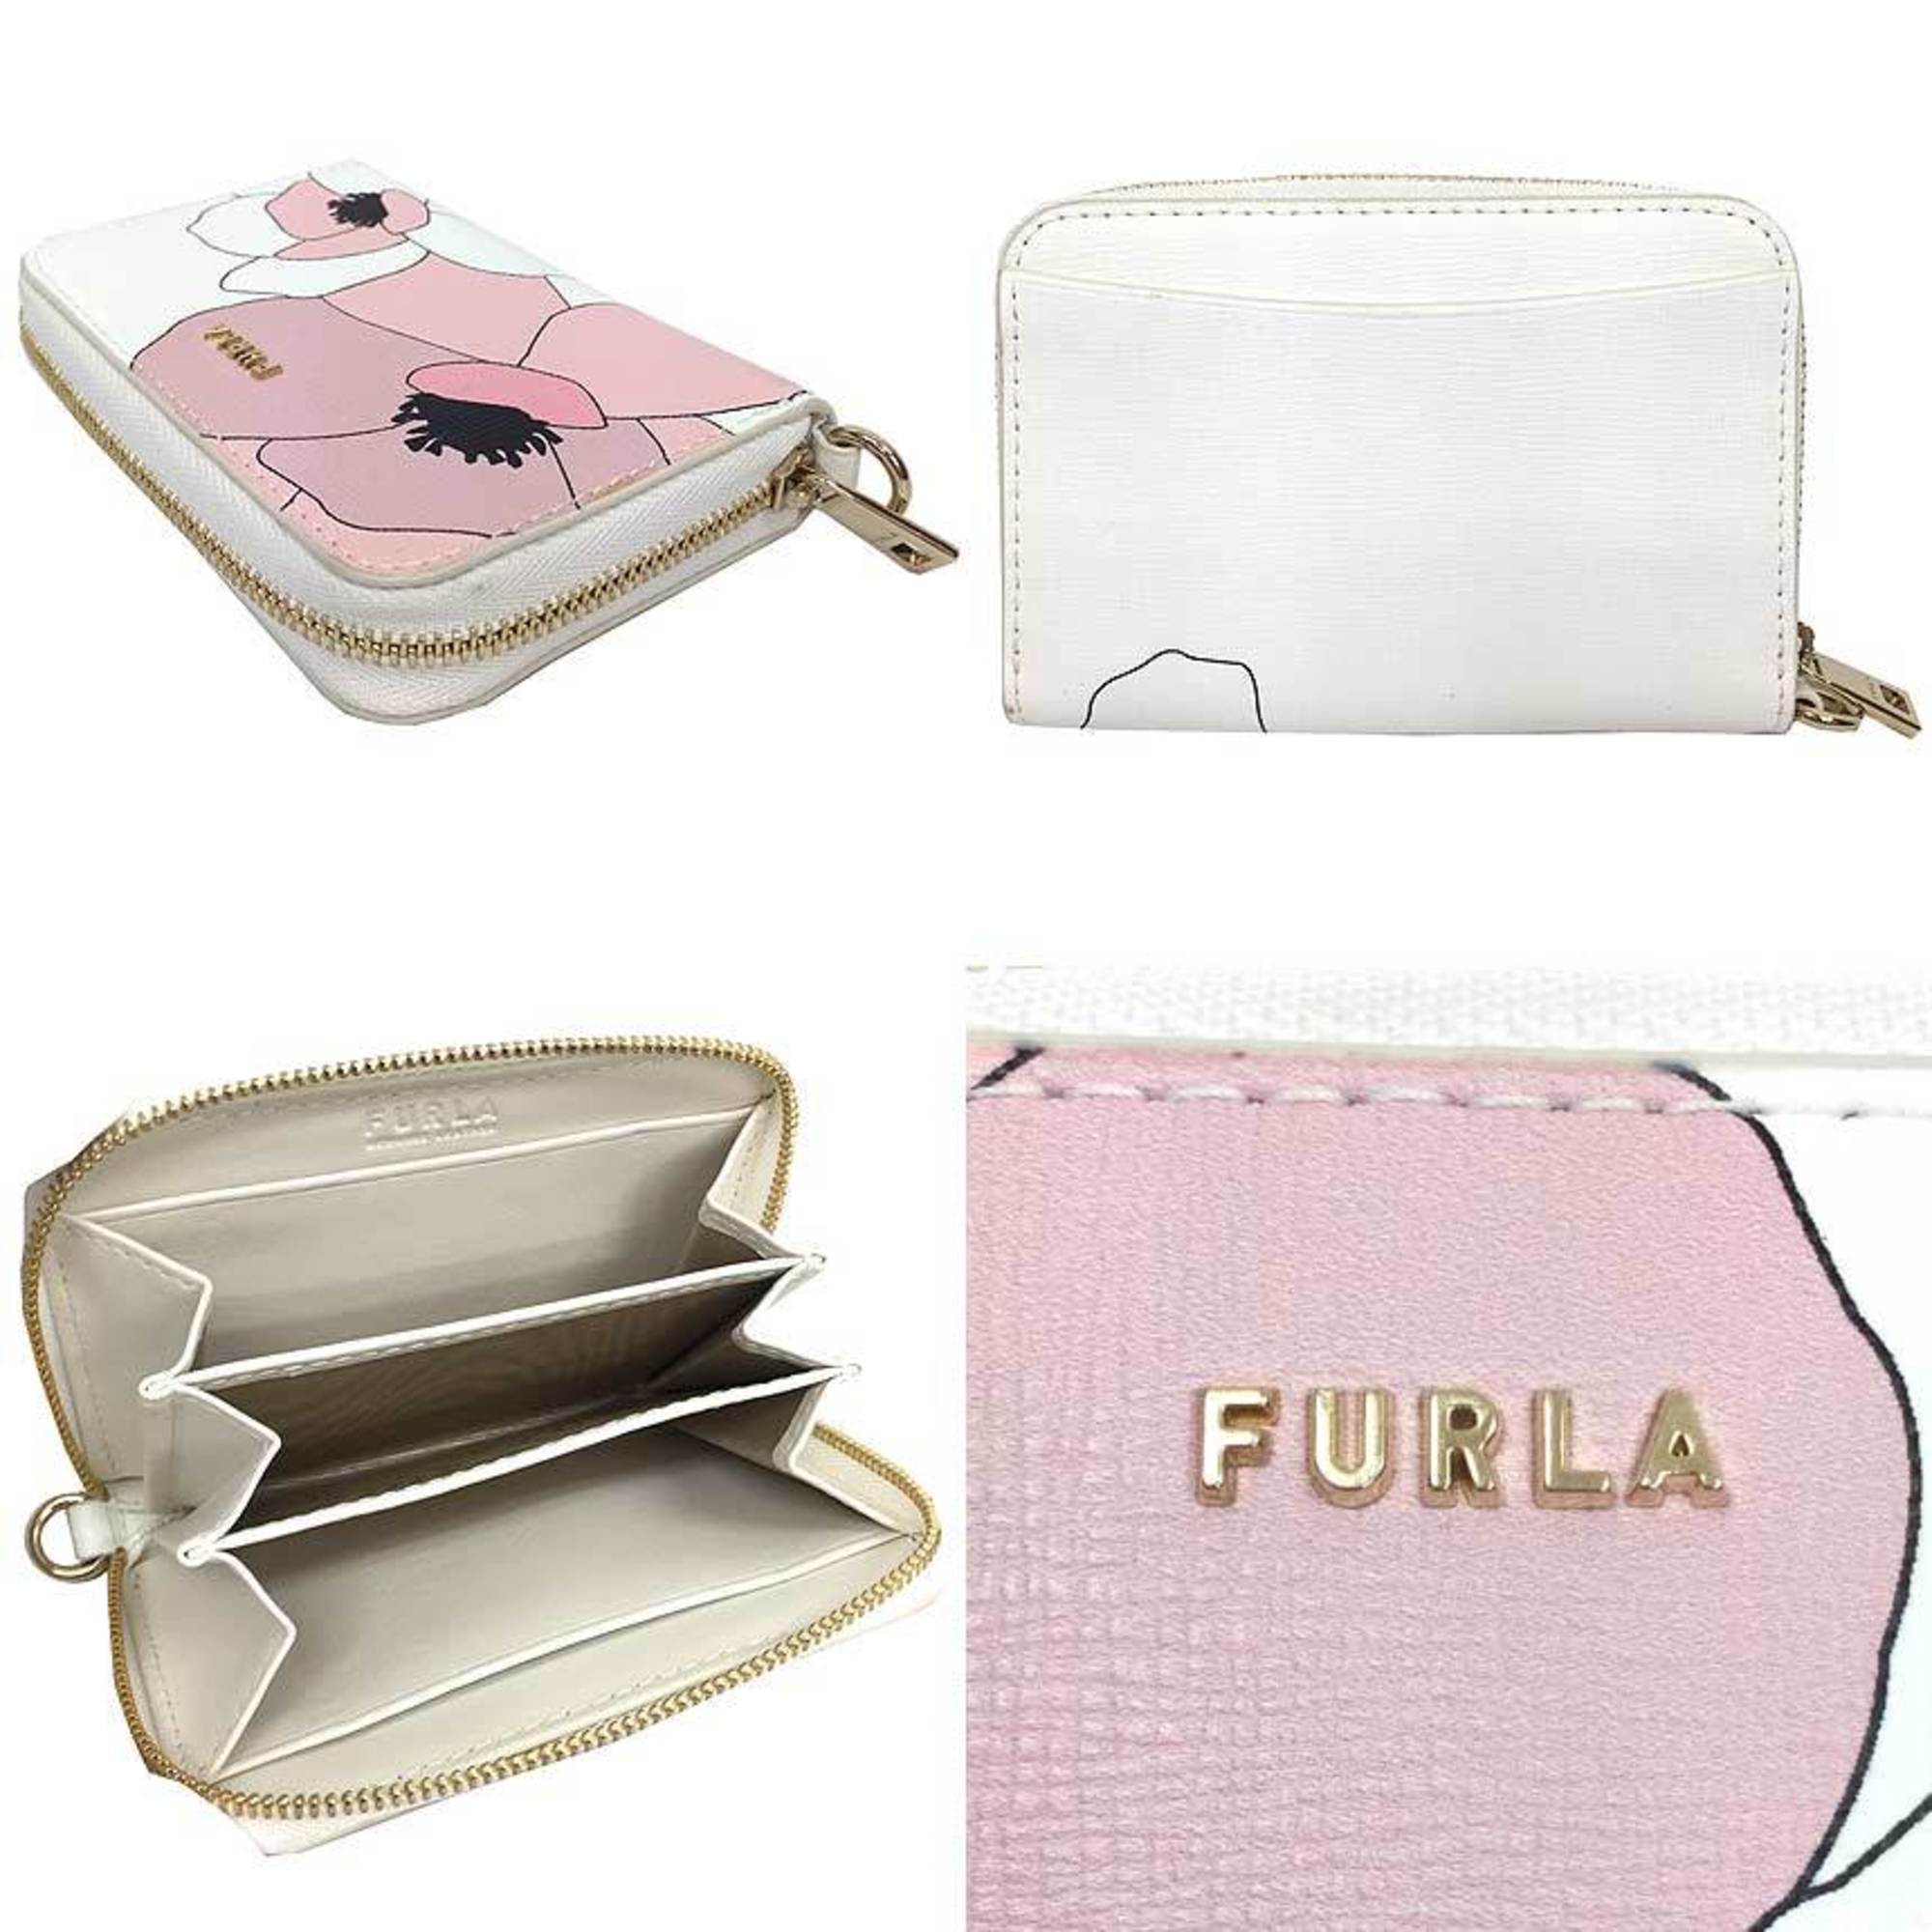 FURLA Coin Case Purse Card Business Holder Magnolia Collection Limited Edition BABYLON S ZIP AROUND Zip Around White x Pink Furla Wallet aq9266